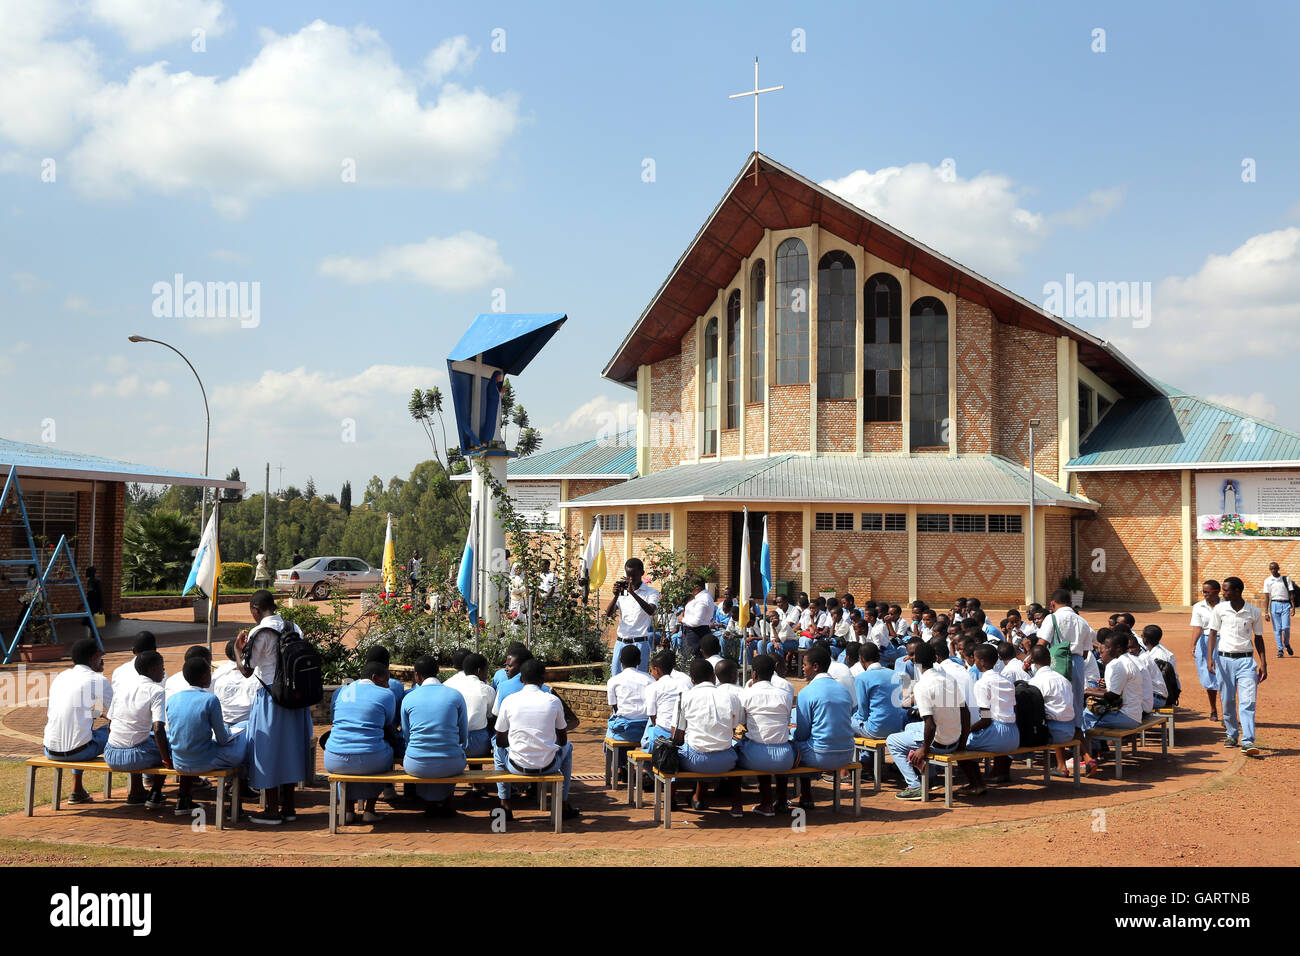 Pilgern vor der katholischen Kirche des Heiligtums von Kibeho in Ruanda, Afrika. Ort der Erscheinung der Jungfrau Maria. Das Heiligtum gilt Kibeho als "Lourdes of Africa". Stockfoto